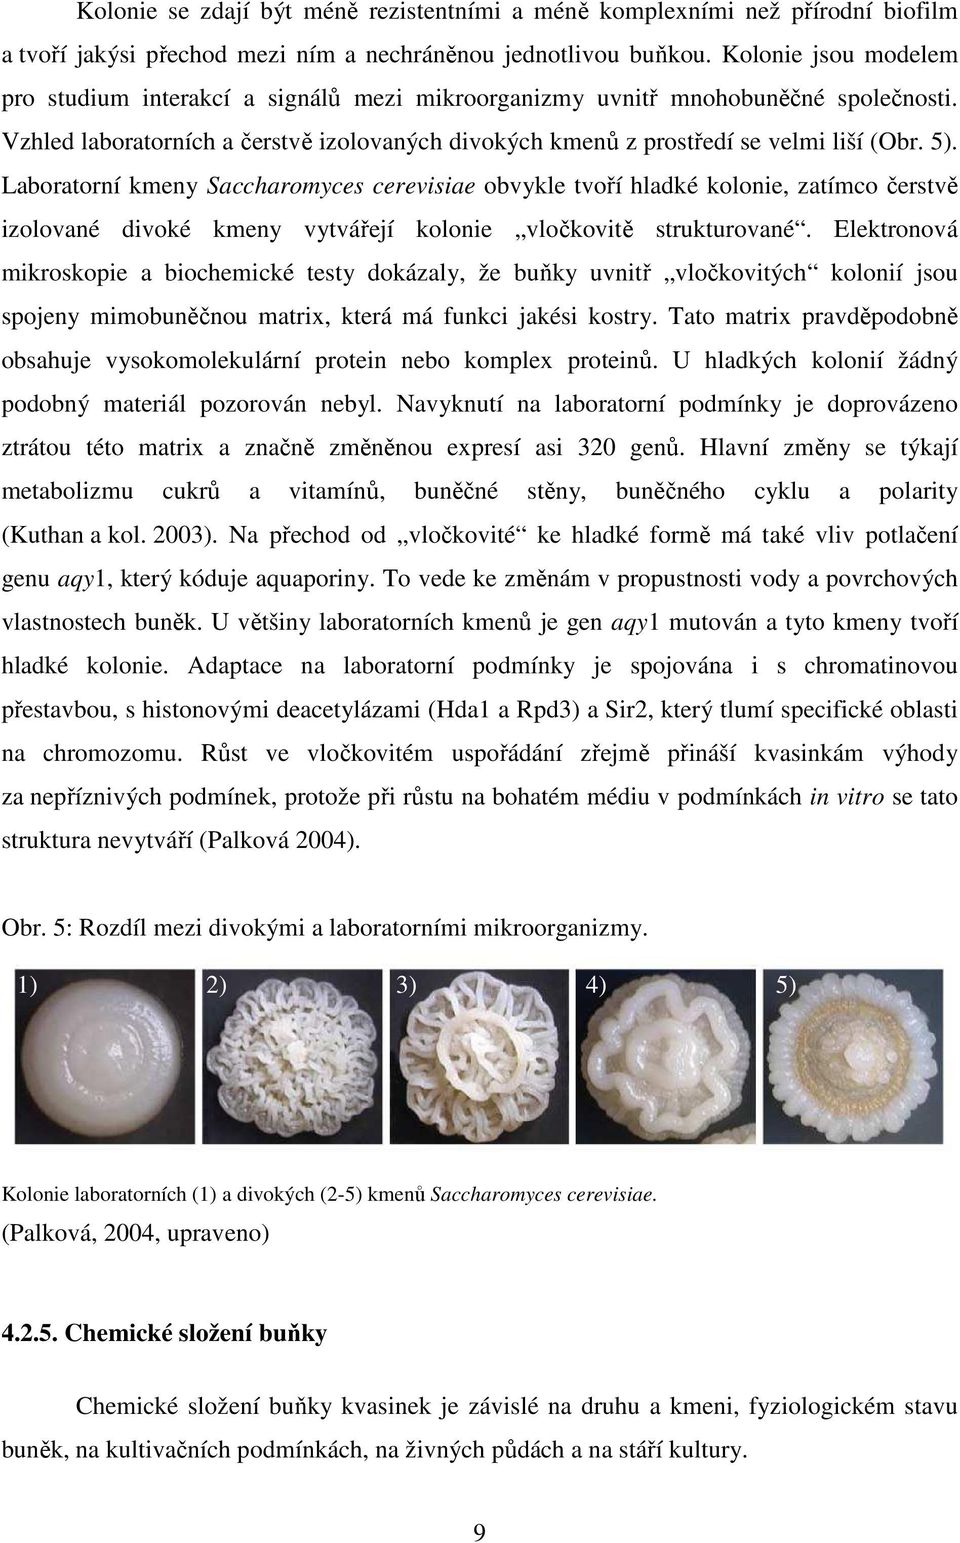 Laboratorní kmeny Saccharomyces cerevisiae obvykle tvoří hladké kolonie, zatímco čerstvě izolované divoké kmeny vytvářejí kolonie vločkovitě strukturované.